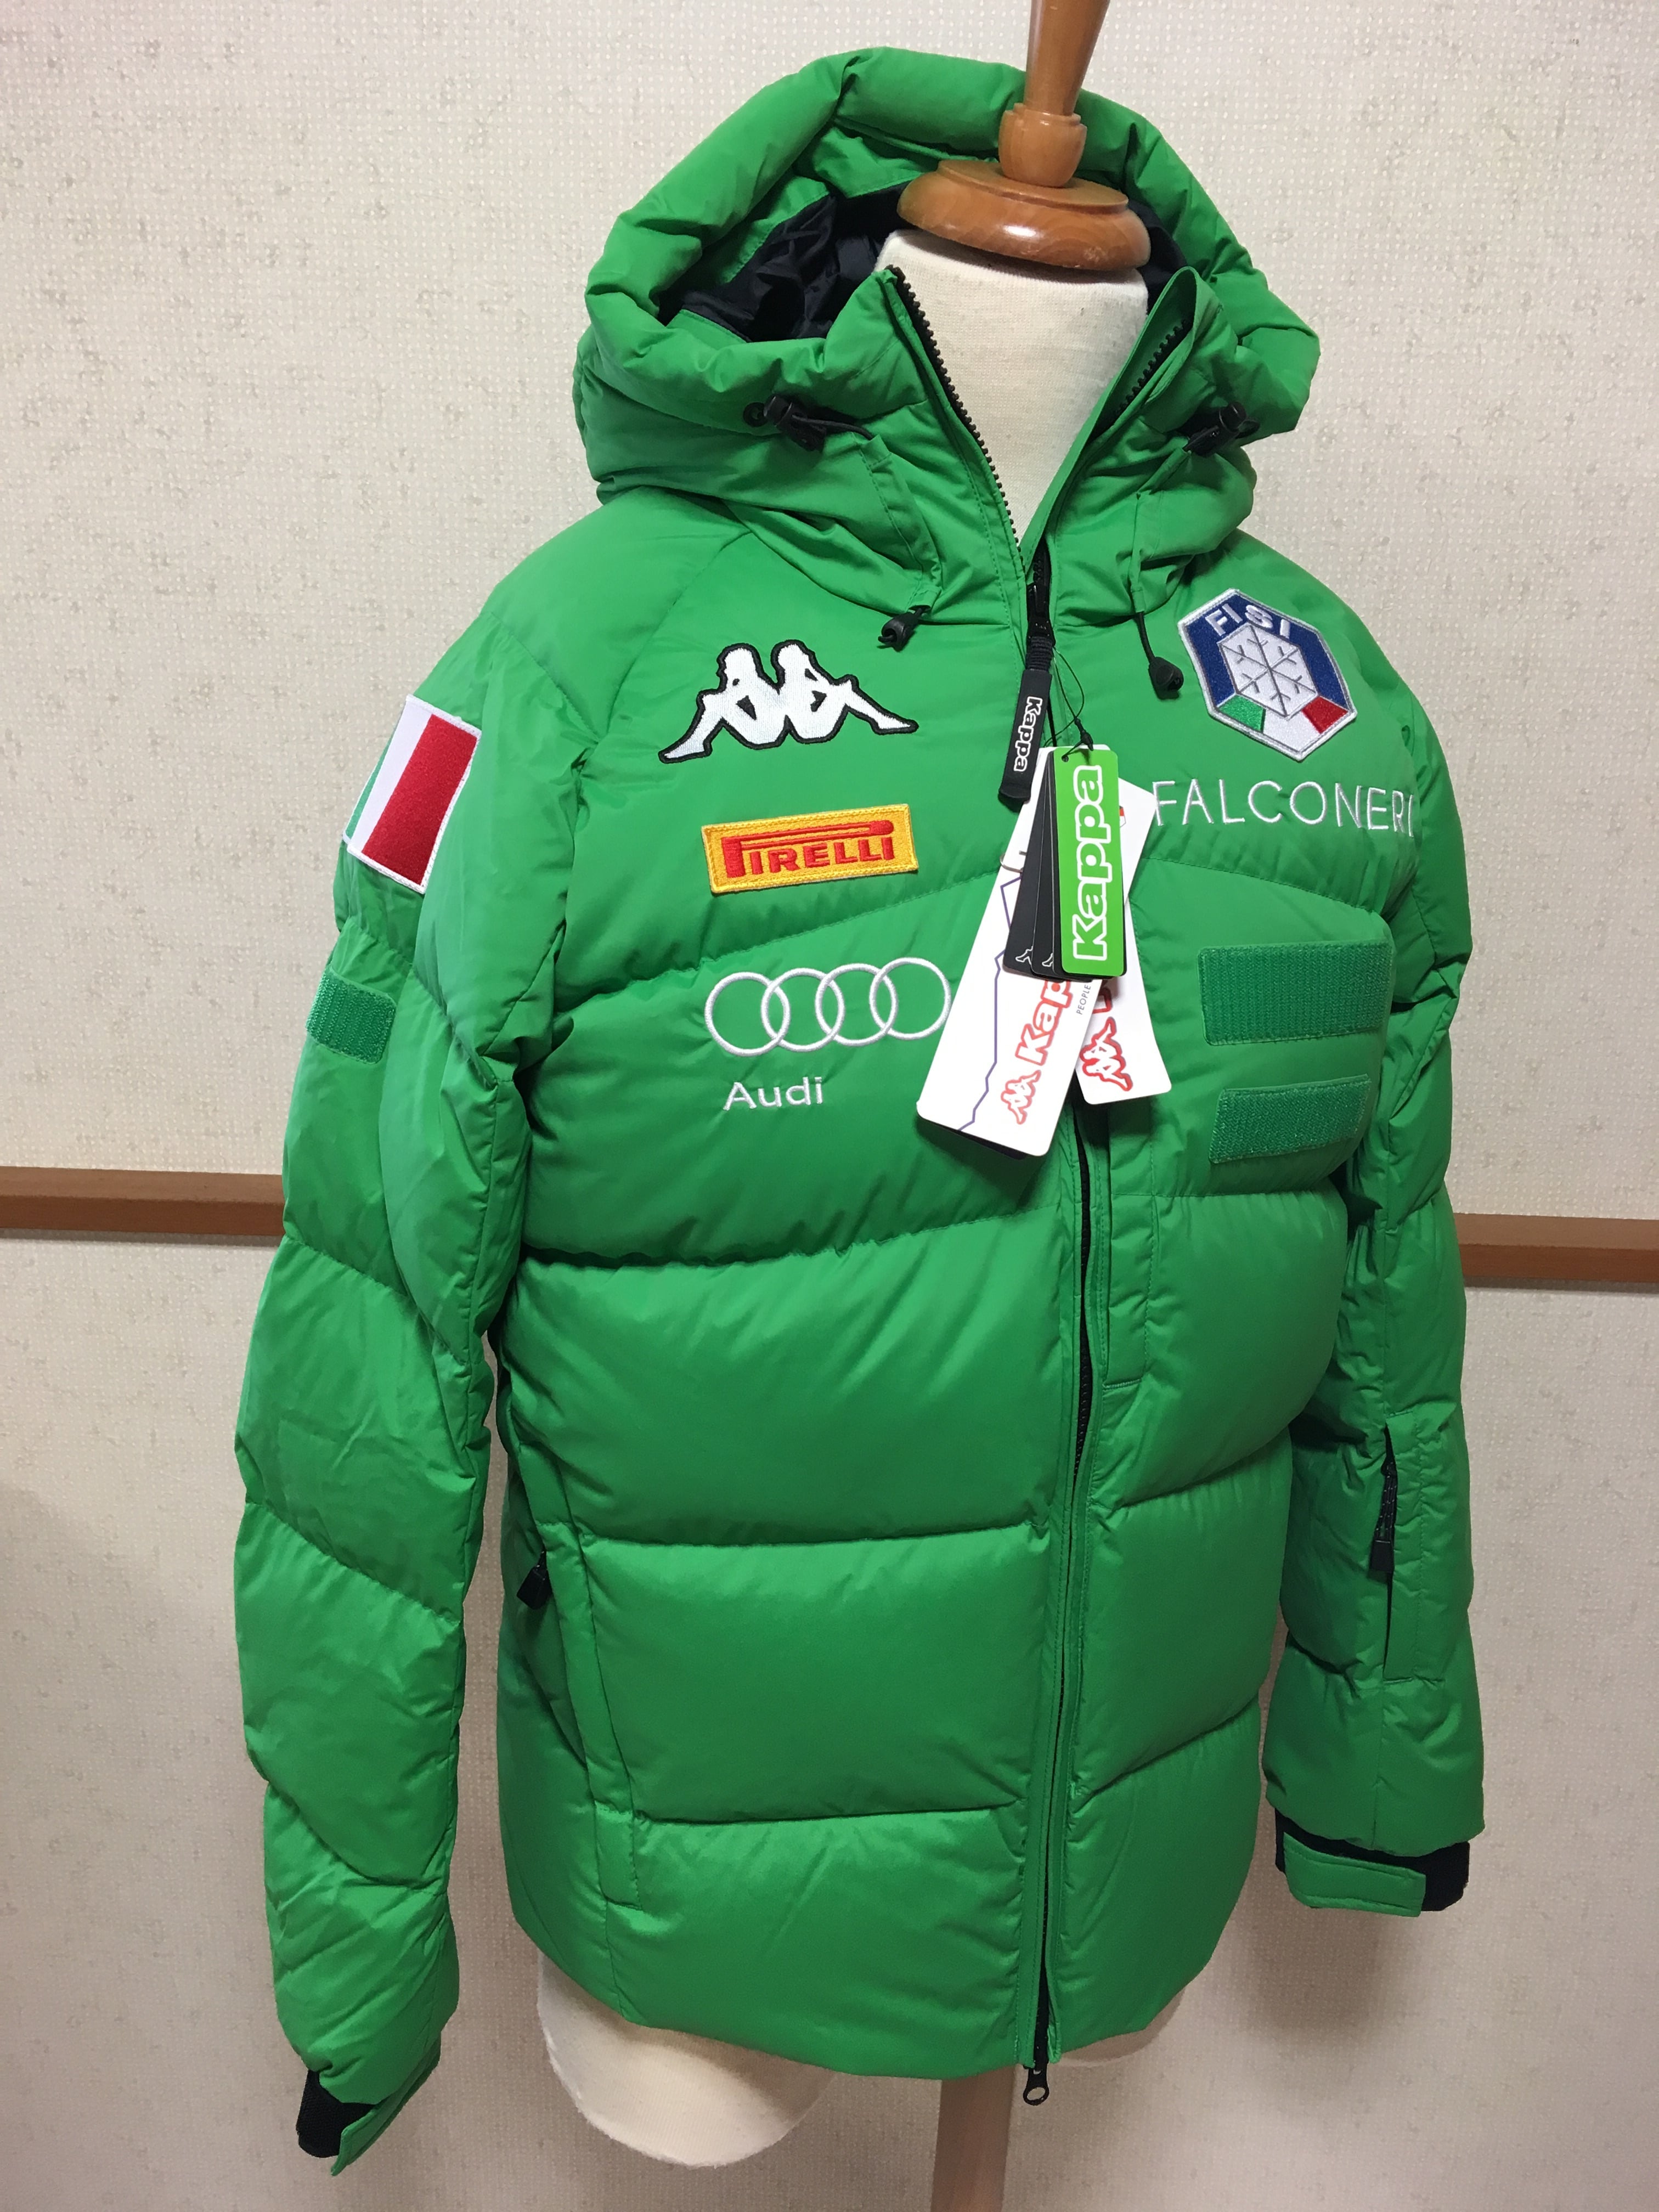 カッパ Kappa スキー スノーボード ダウンジャケット FISI イタリア代表 公式ウェア | FREAK  スポーツウェア通販・海外ブランド・日本国内未入荷・海外直輸入